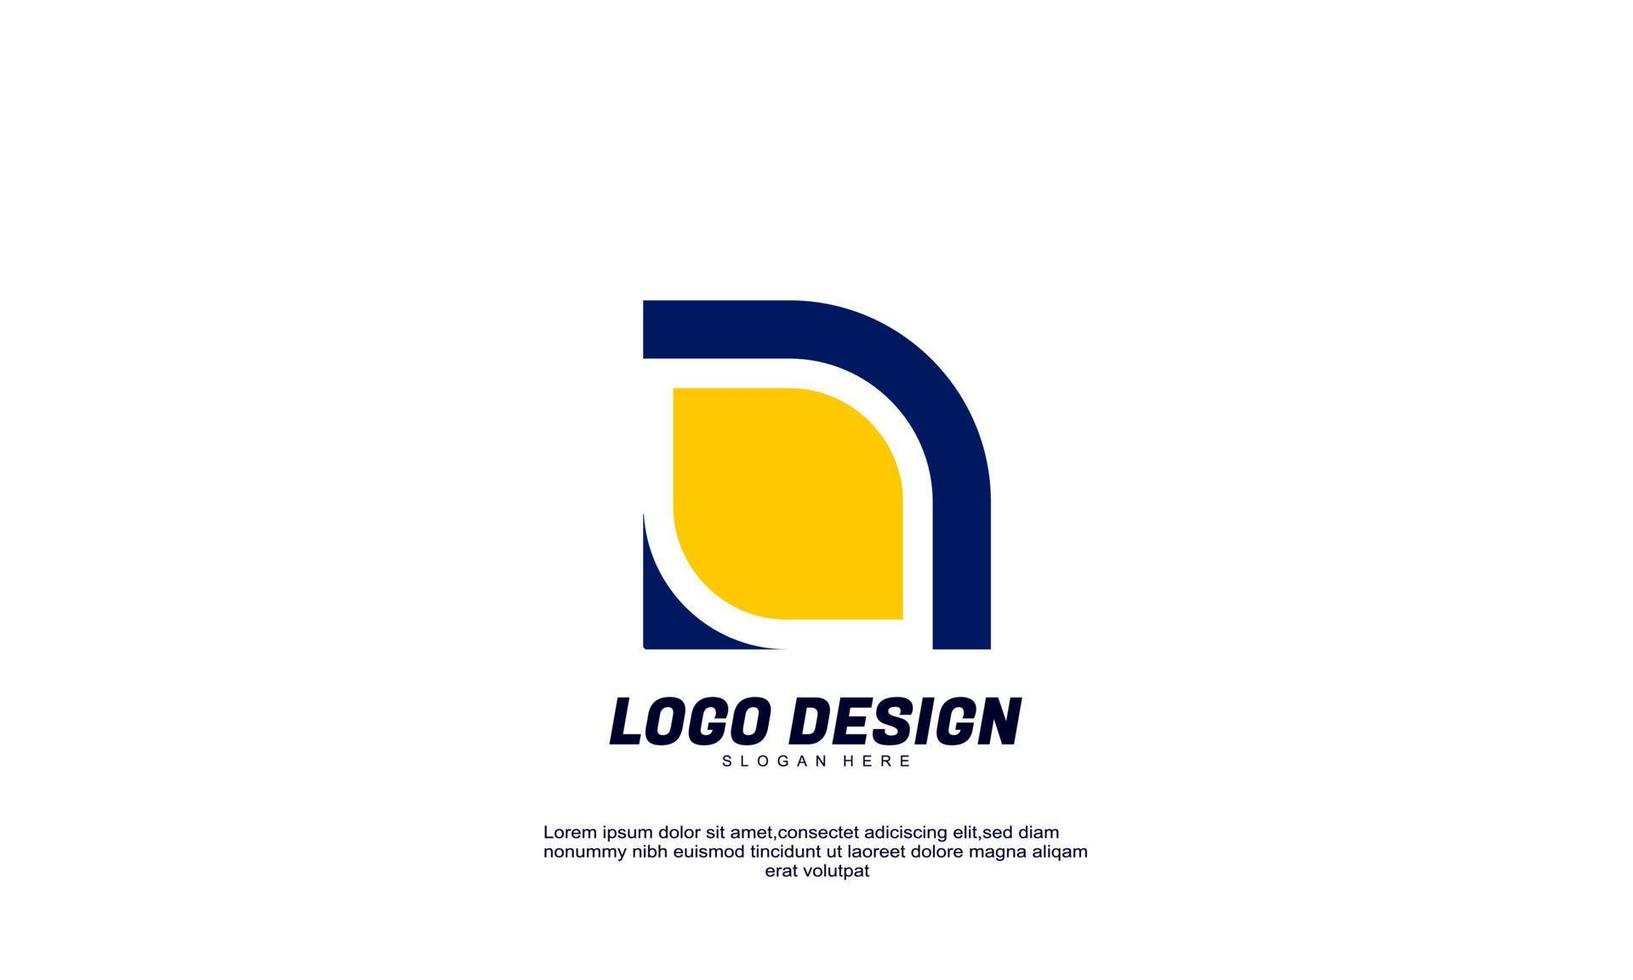 logotipo de identidad de marca de idea de forma impresionante moderno para plantilla de diseño de colecciones de negocios y empresas vector